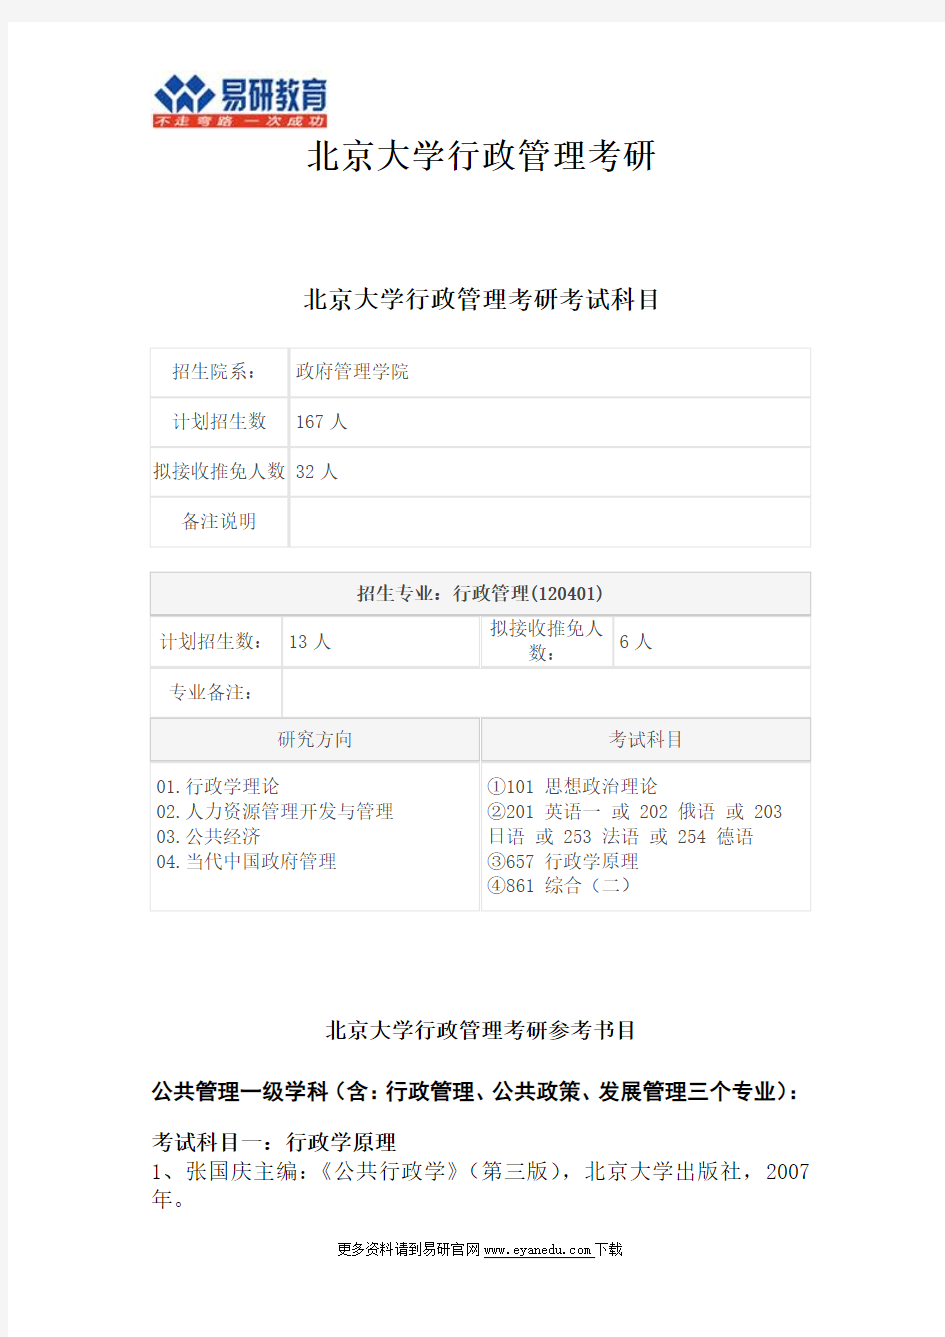 北京大学政管院行政管理考研行政学原理考试笔记范围